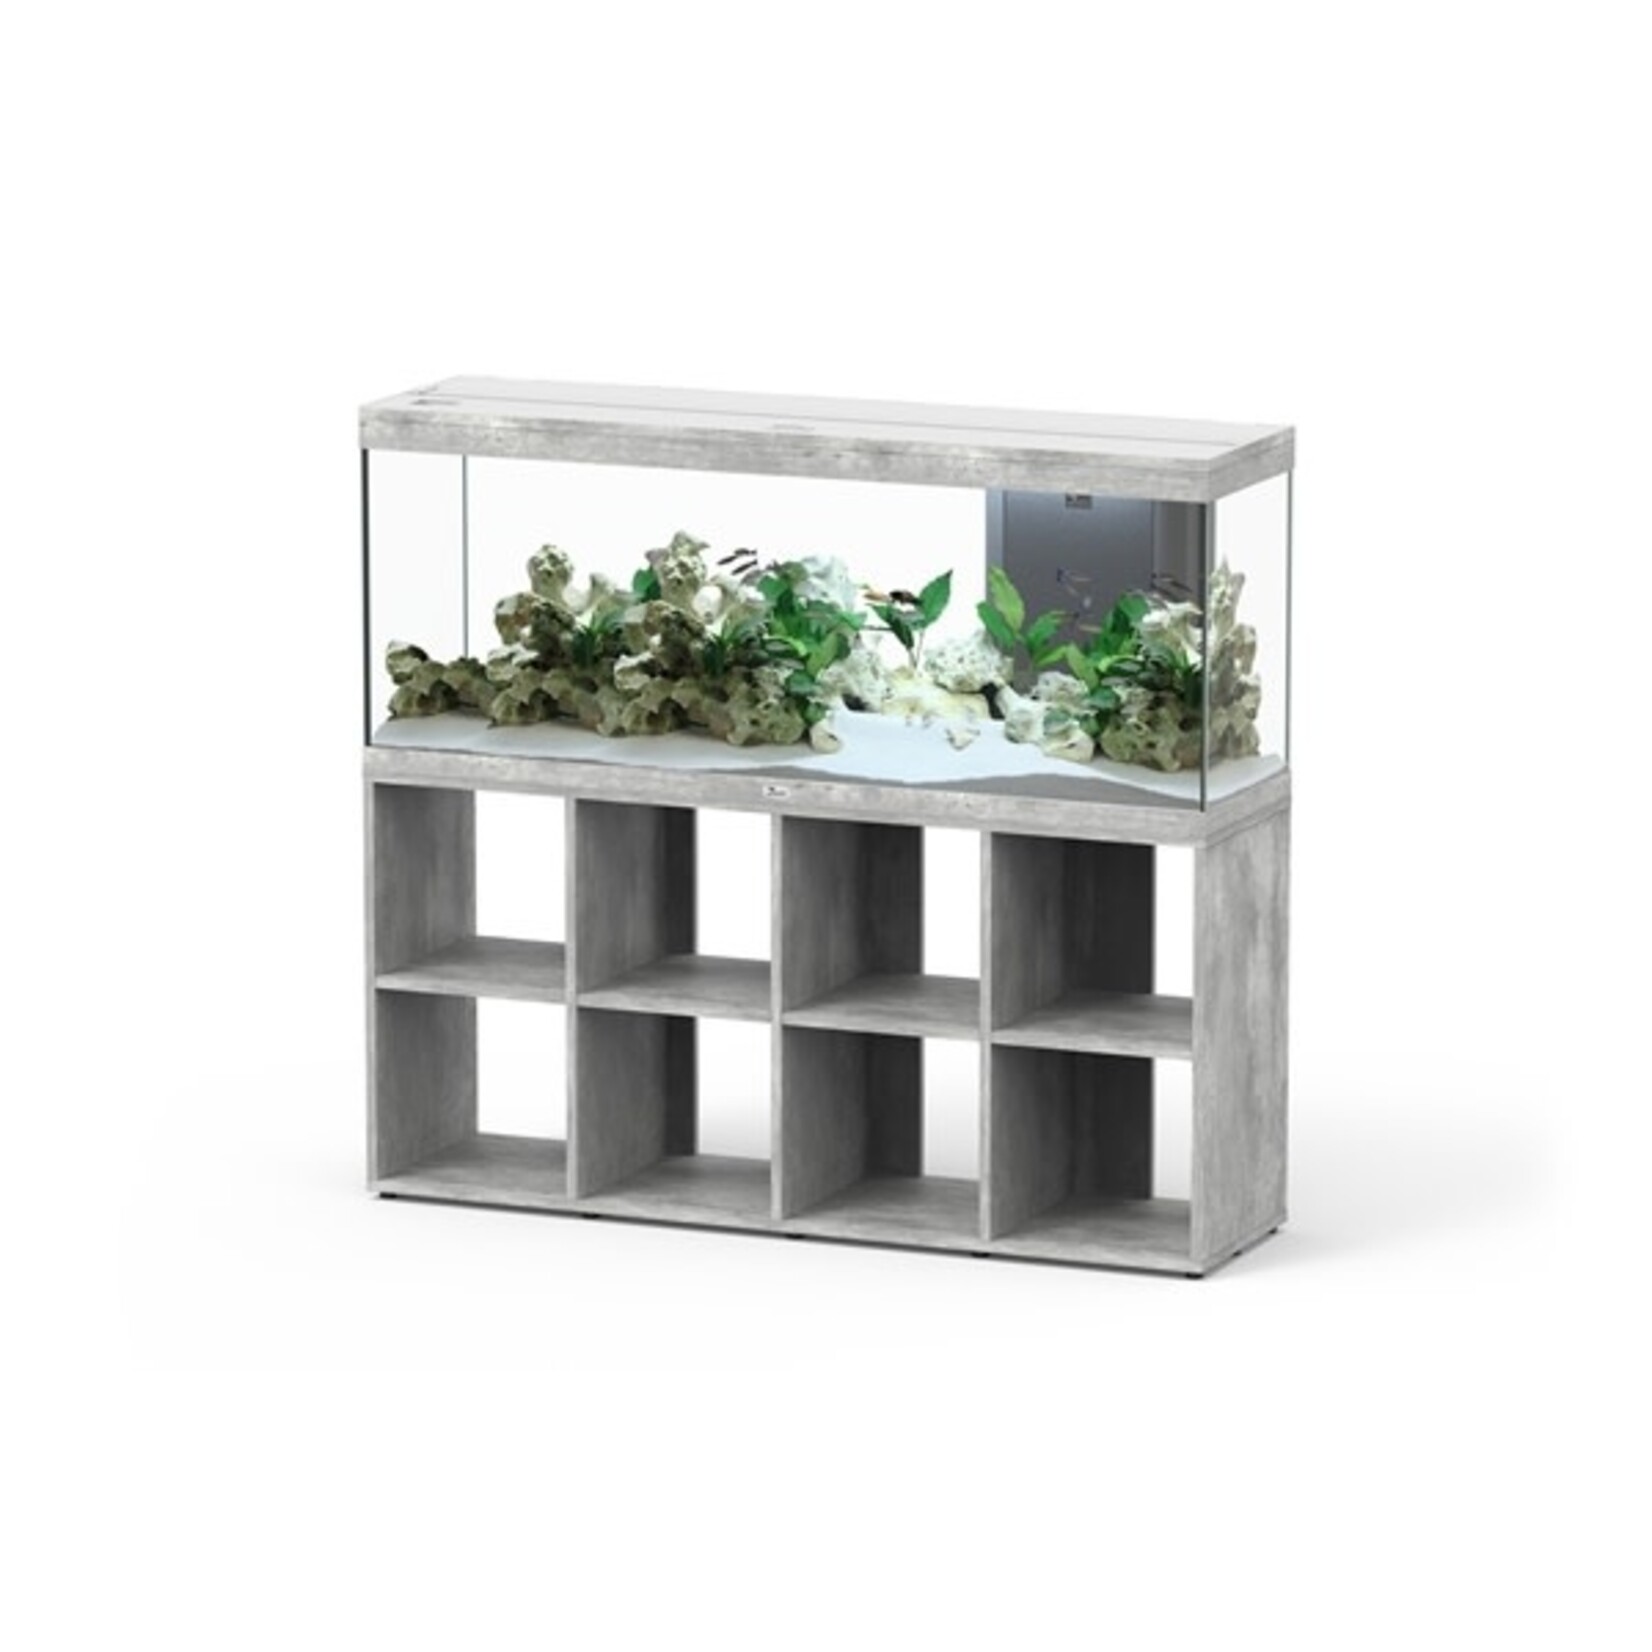 Aquatlantis Aquarium splendid 150 biobox beton-059